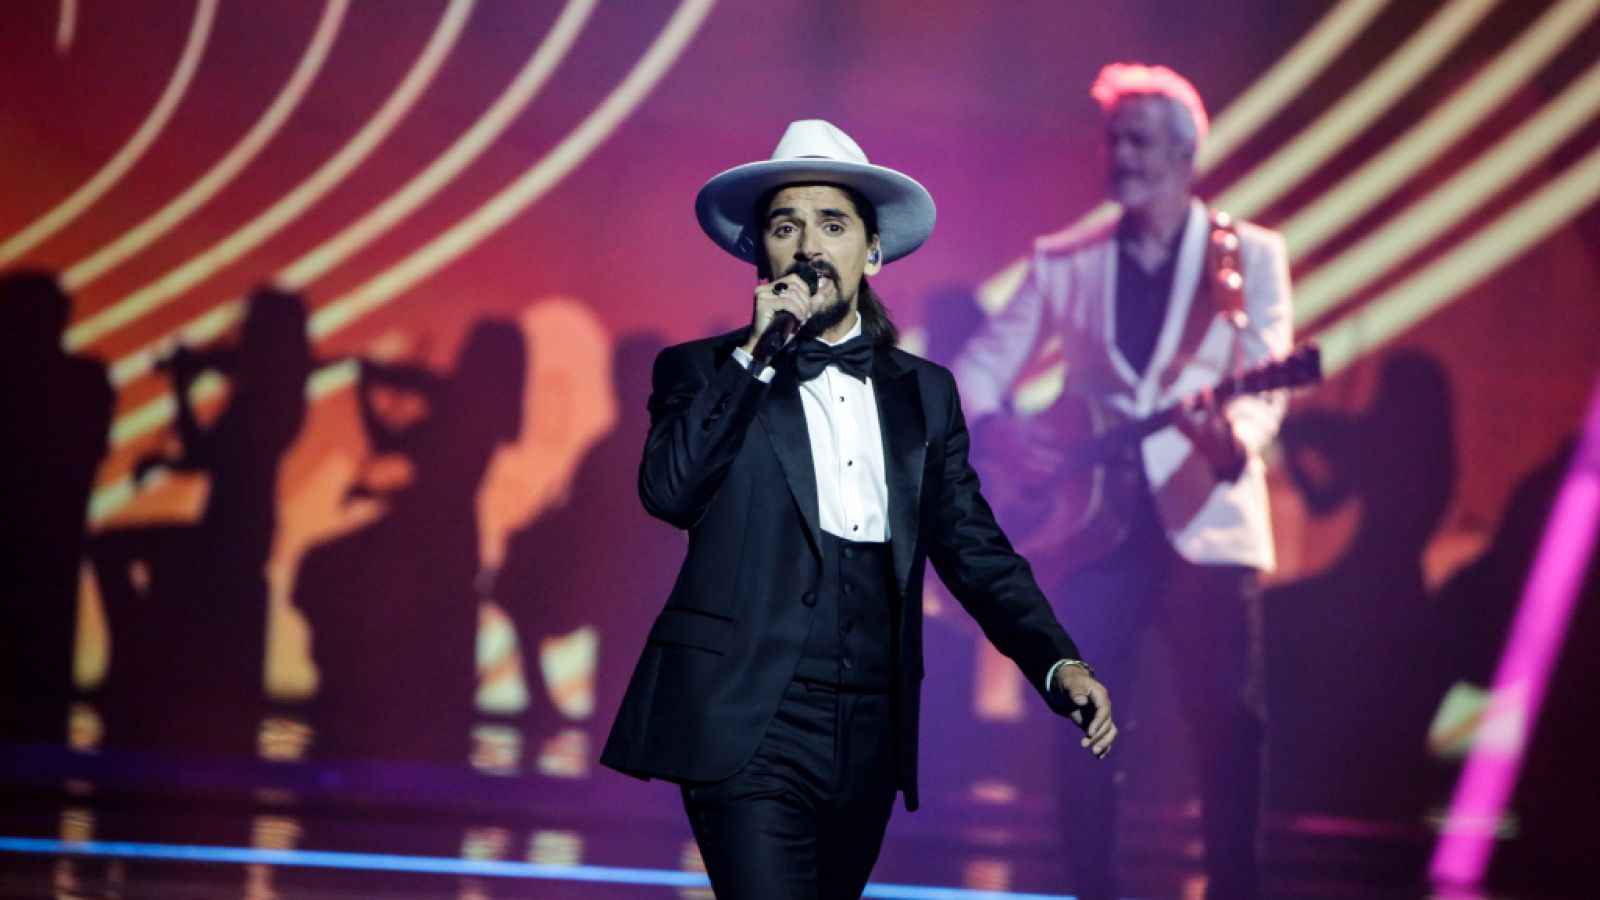 Eurovisión 2021: Portugal canta "Love is on my side" en la final